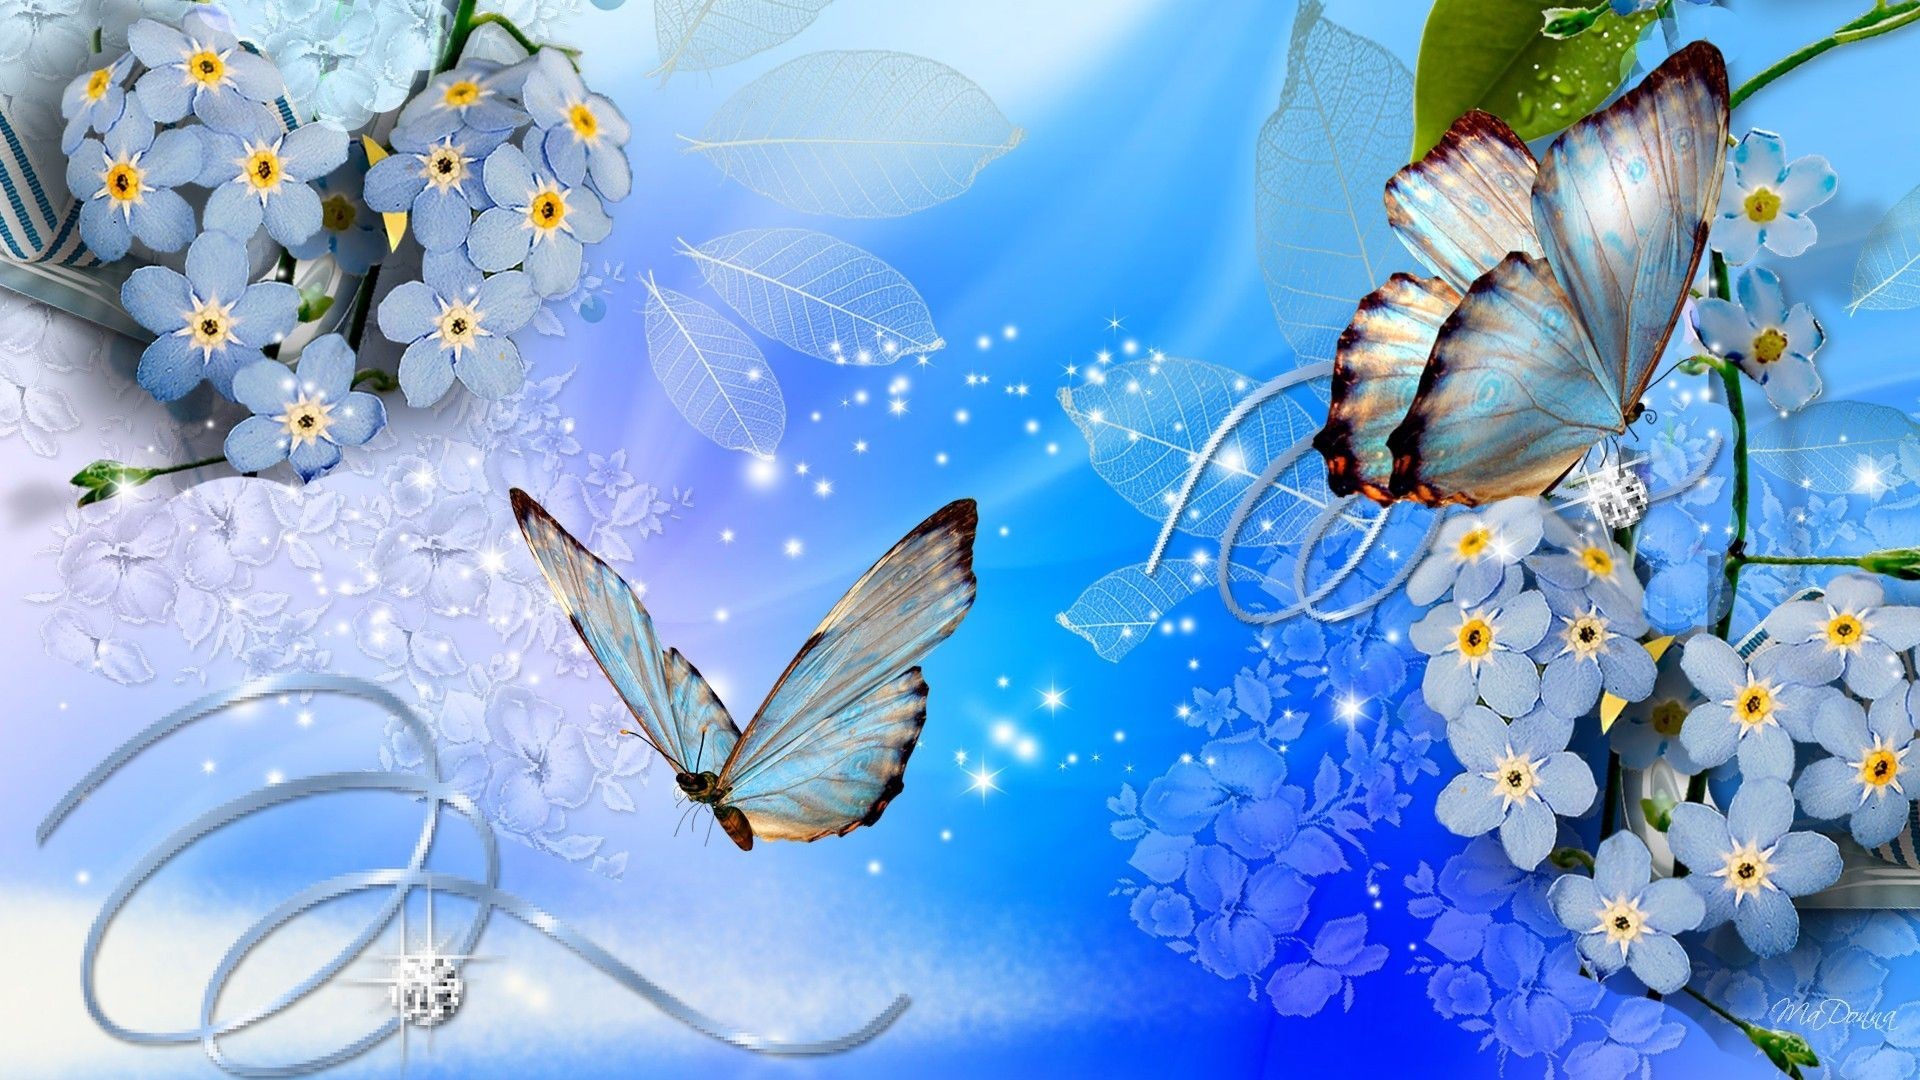 1920x1080 Flower butterfly Pretty Lovely Nice Wallpaper Hd Fresh Pretty Blue  Backgrounds Of Flower butterfly Pretty Lovely